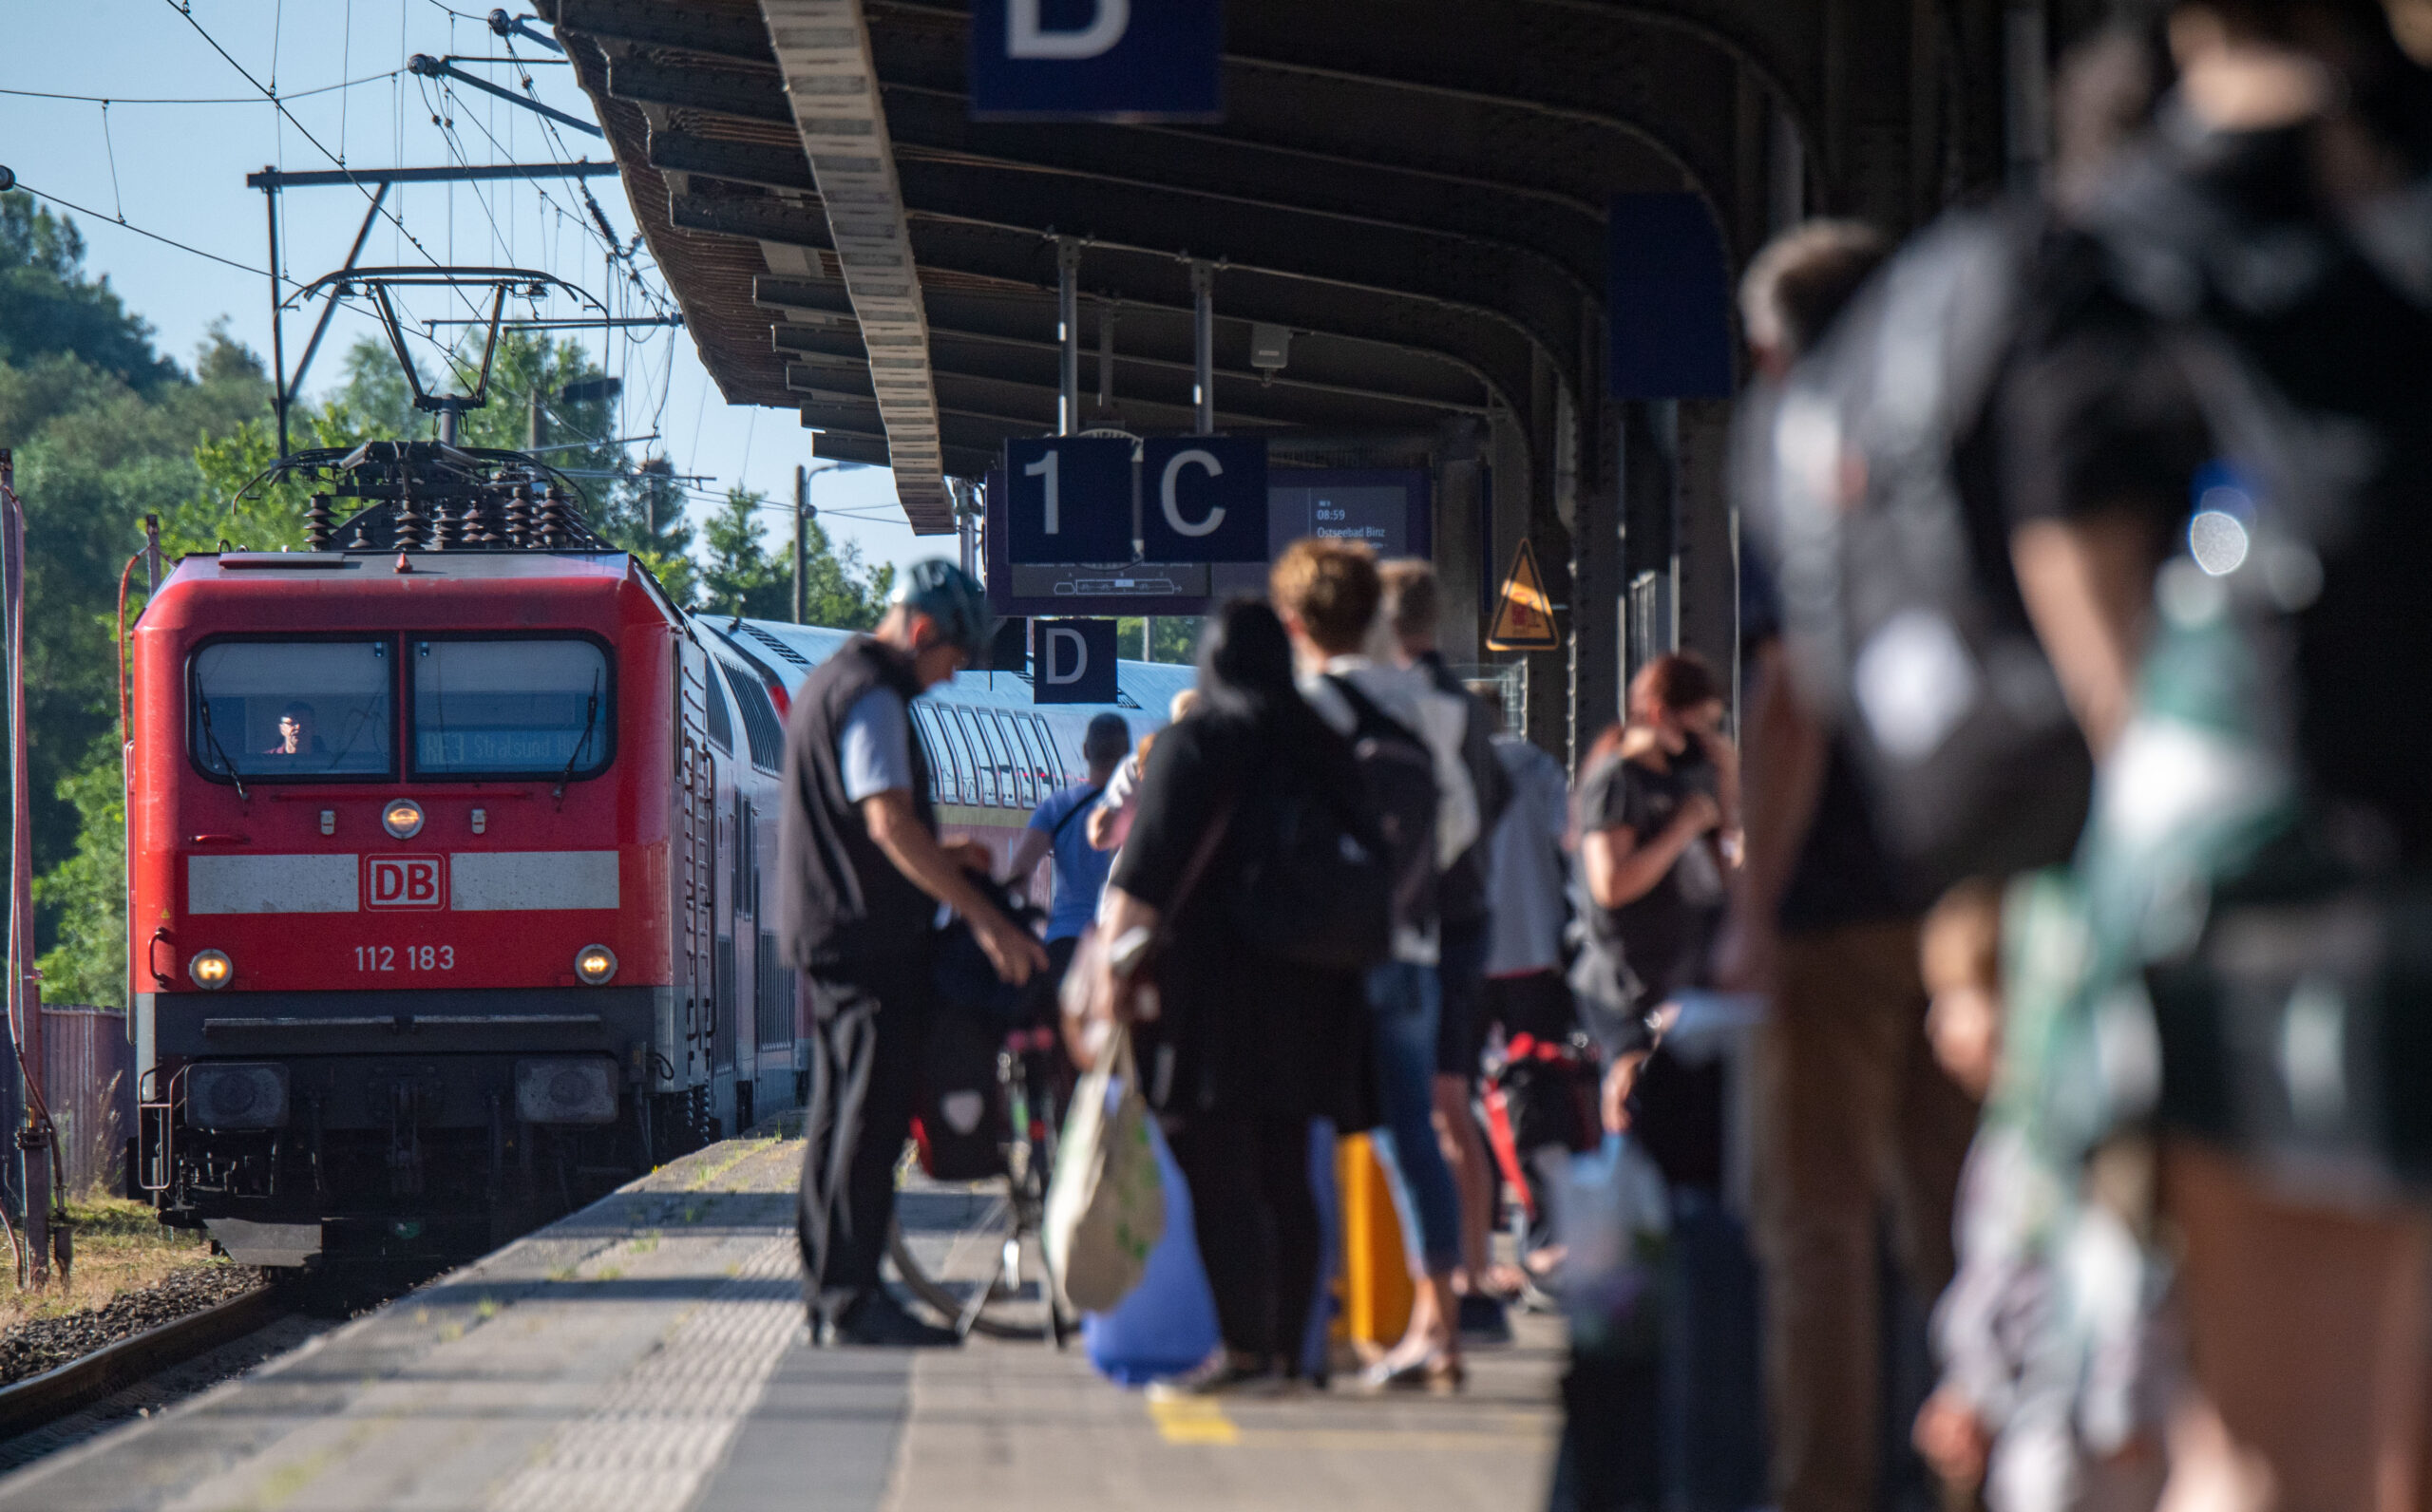 Fahrgäste warten im Bahnhof auf eine Regionalbahn. Wegen der Sommerferien waren Staus auf den Autobahnen erwartet worden, doch dort blieb es im Gegensatz zu den Zügen ruhig. (Archivbild)